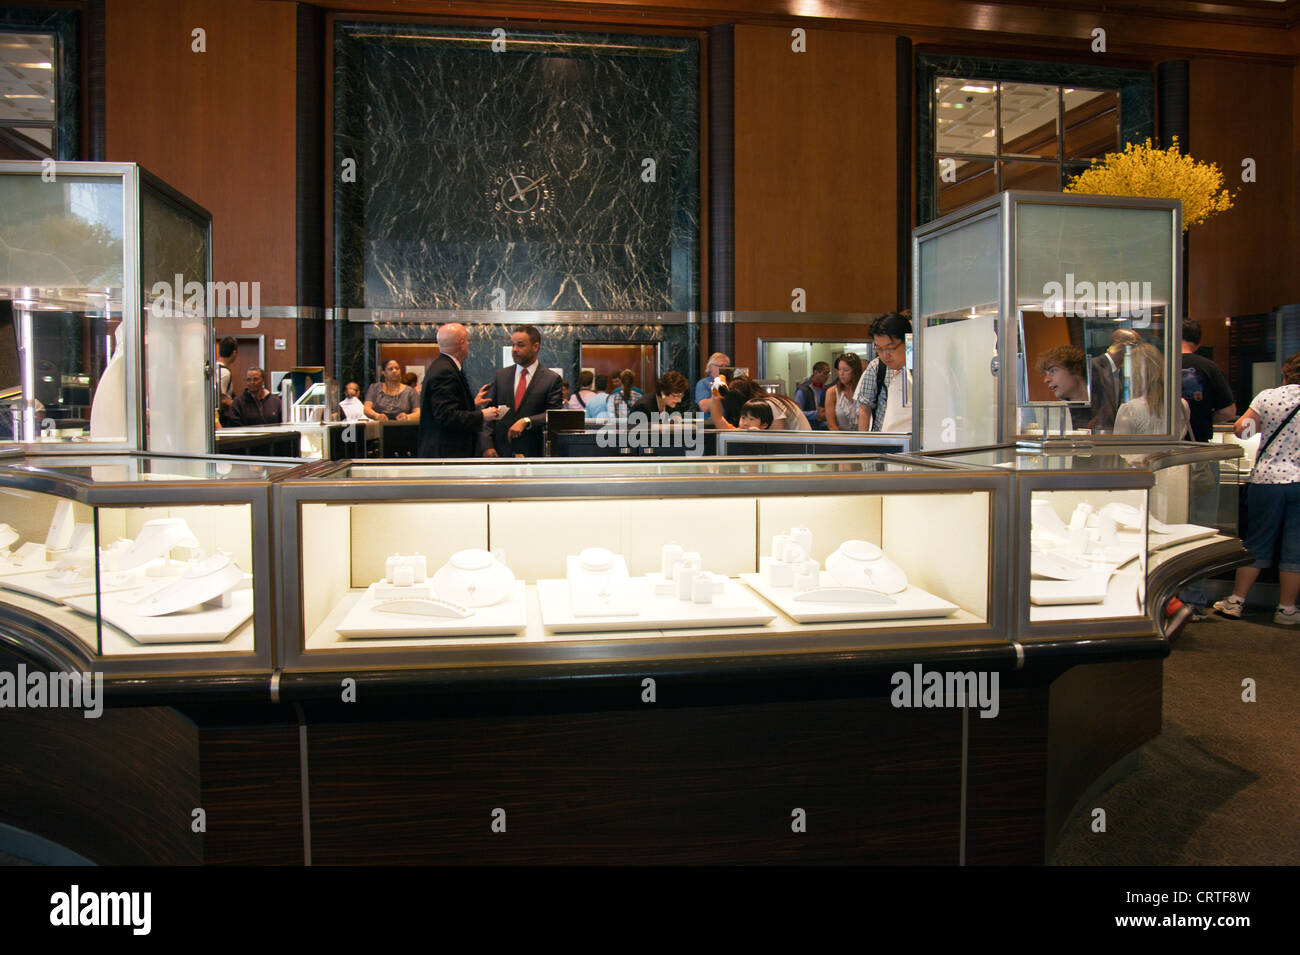 Im Inneren der legendären Tiffany & Co Juweliergeschäft in New York City  Fifth Avenue Glas Vitrinen Sie in Werkstatt Stockfotografie - Alamy